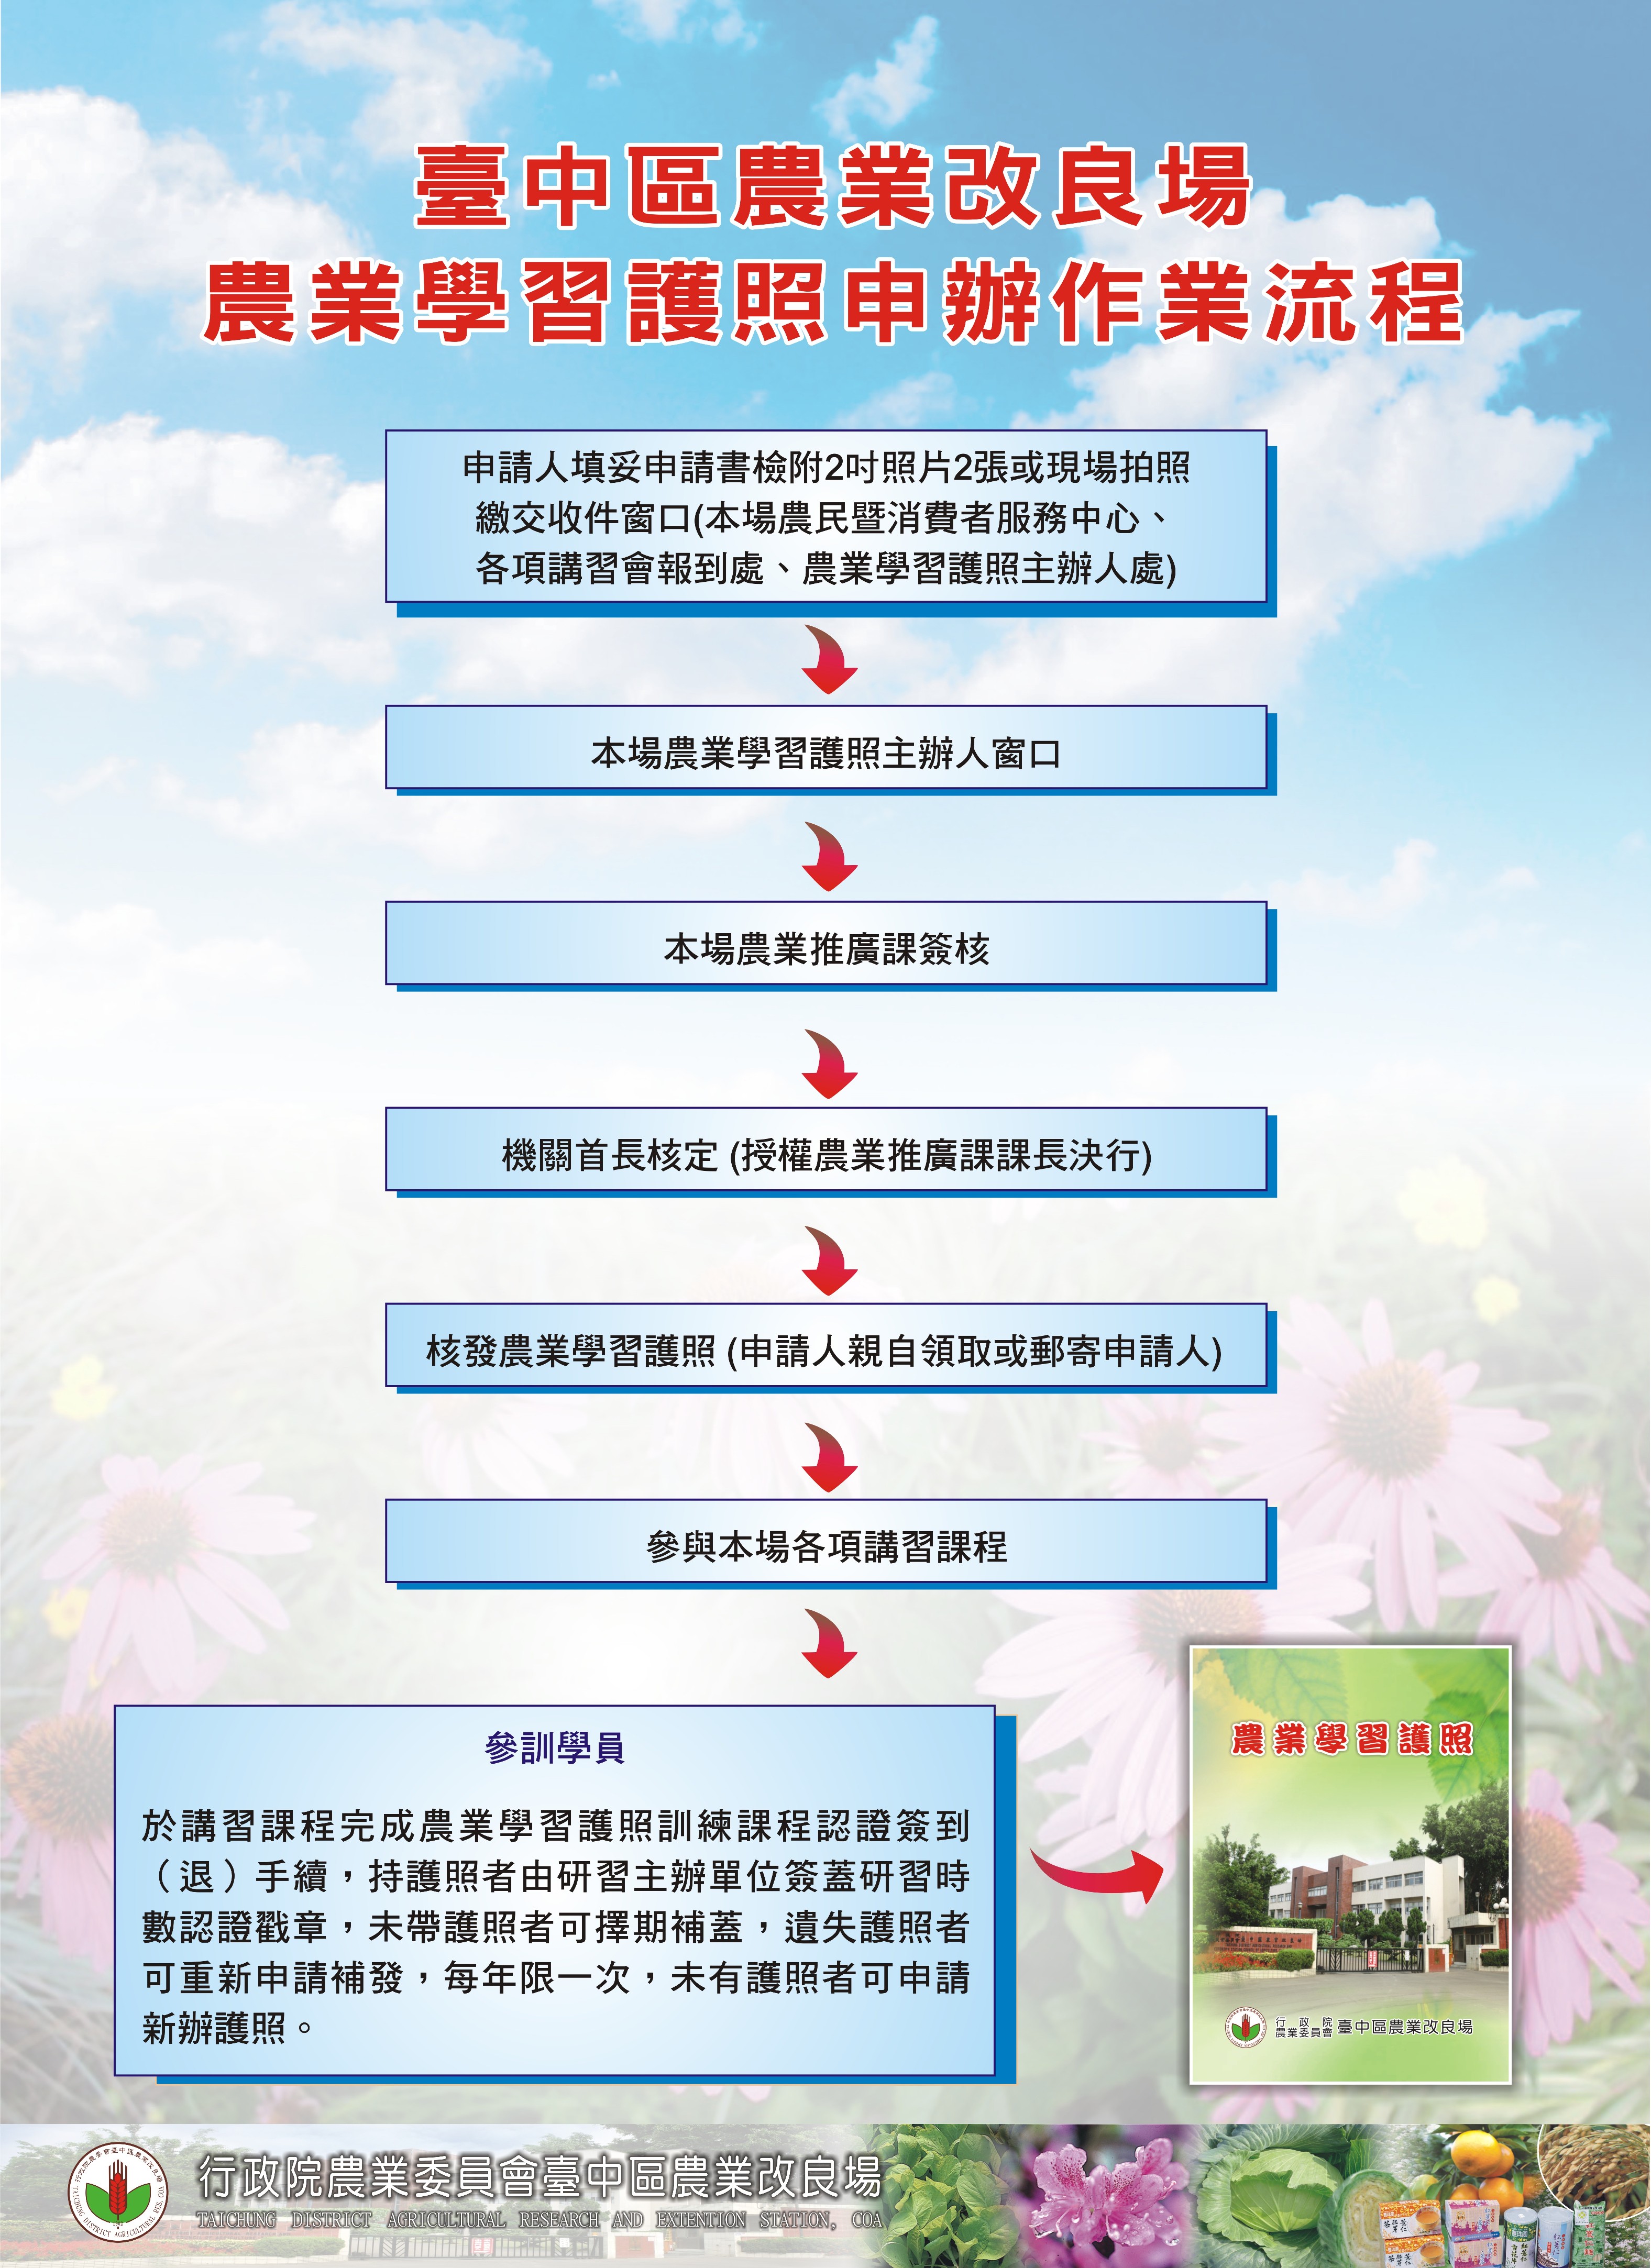 臺中區農業改良場農業學習護照申辦作業流程 